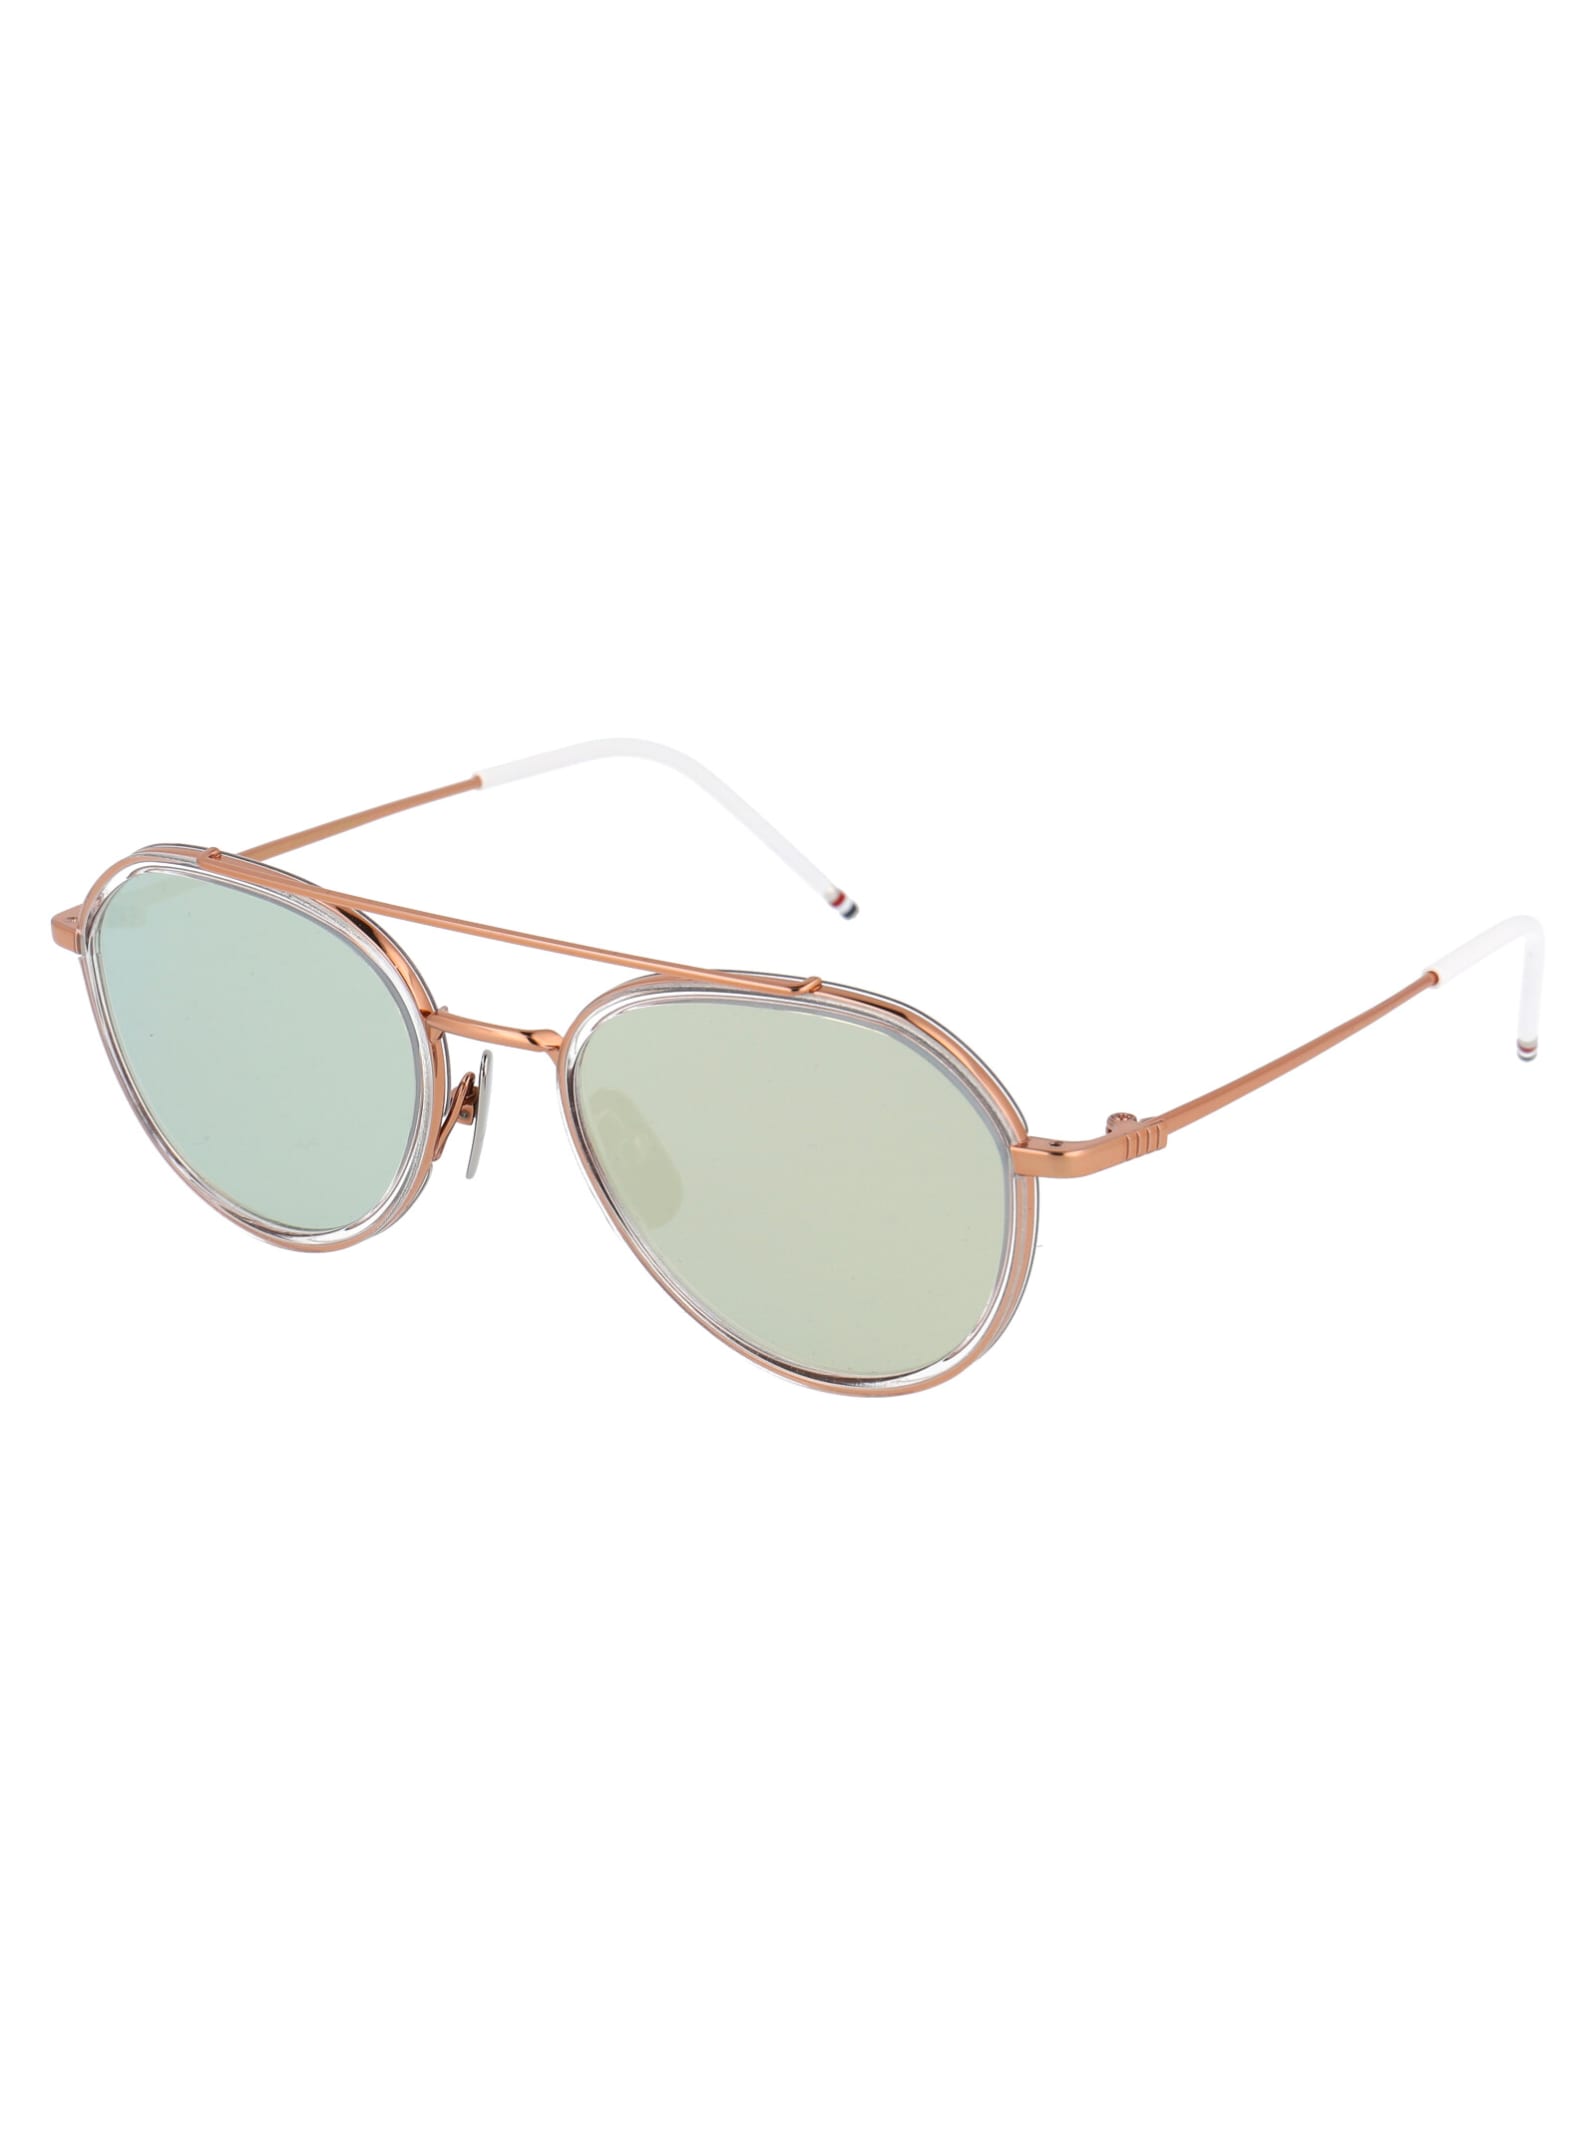 Shop Thom Browne Tb-801 Sunglasses In Rose Gold - Crystal Clear W/ Dark Grey - Milky Gold Flash - Ar